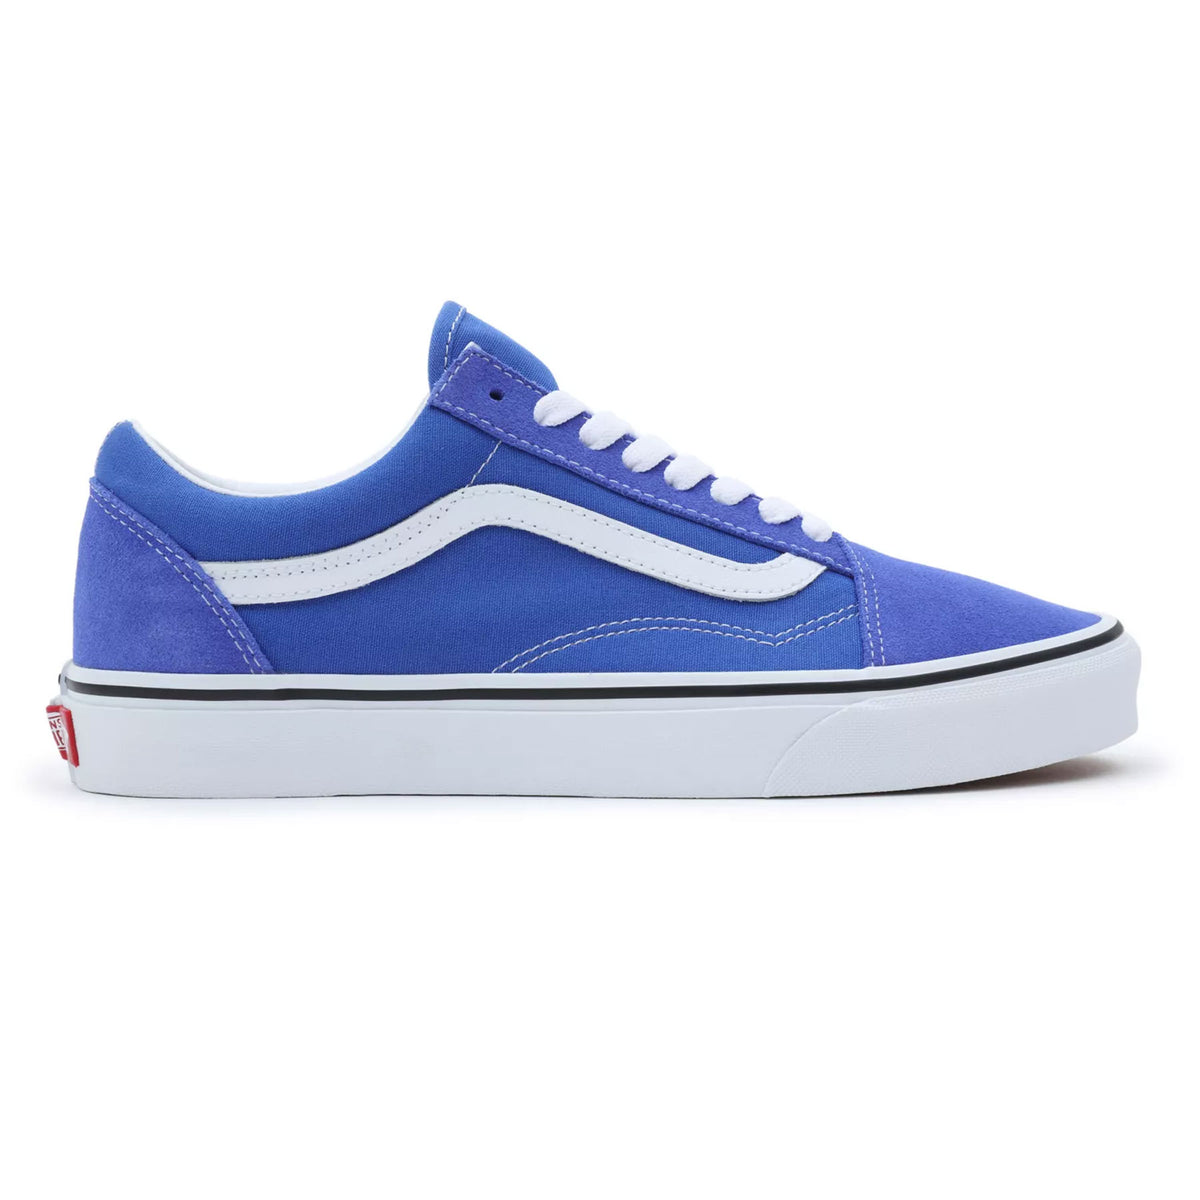 Vans Old Skool Shoe - Dazzling Blue Shoes